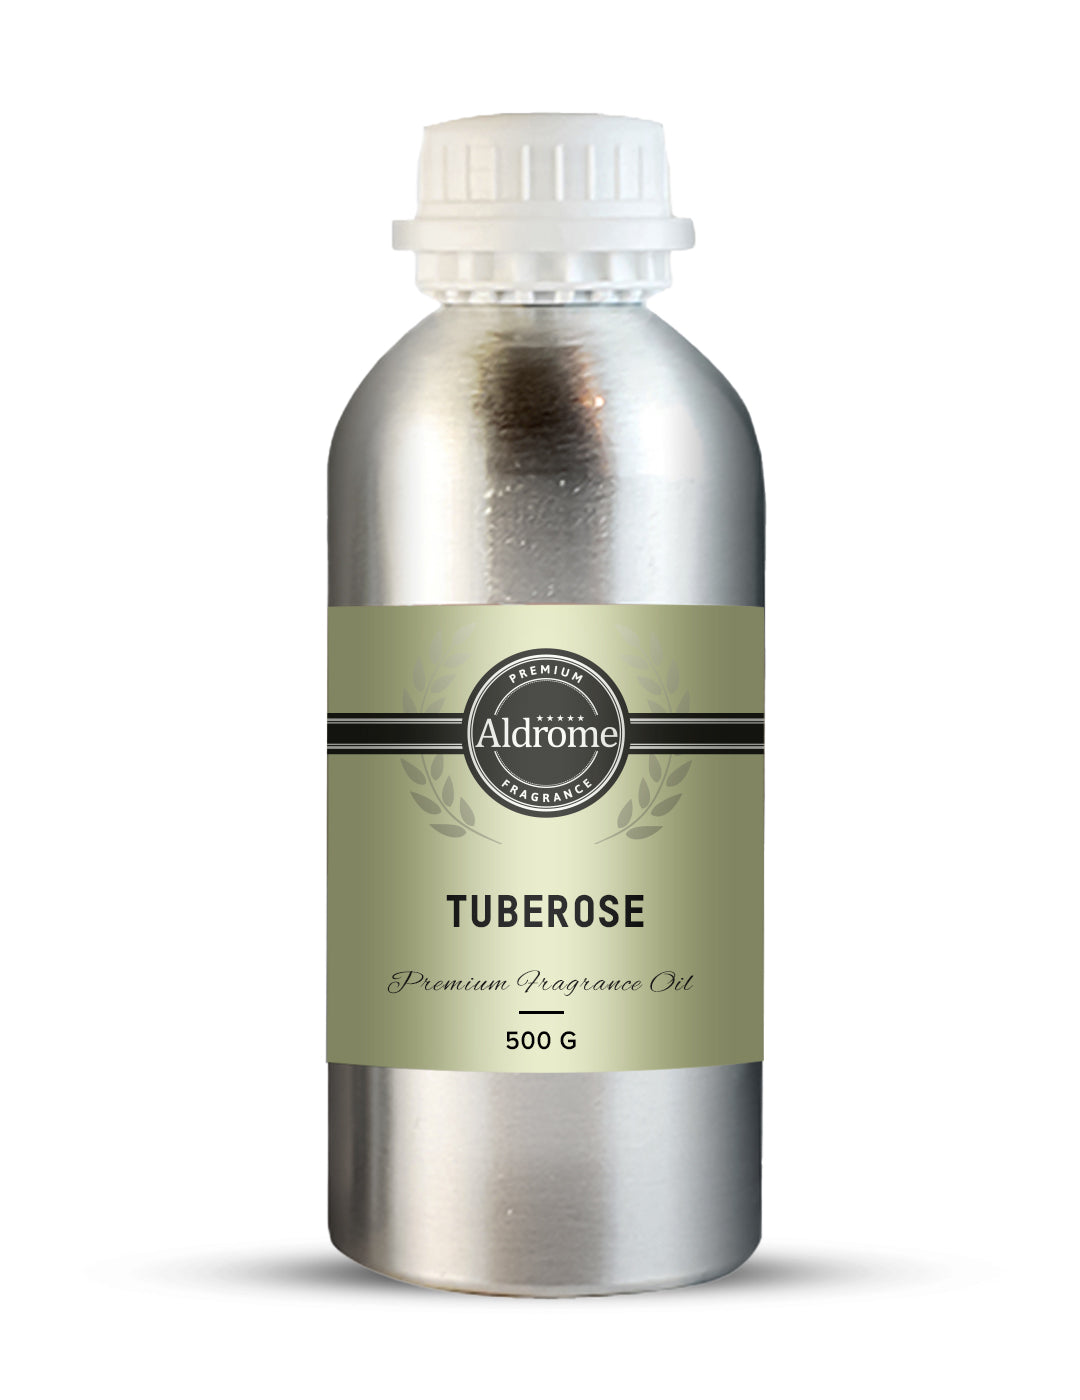 Buy Tuberose Fragrance Oil - 500 G at Best price | Aldrome Premium Fragrance Oil